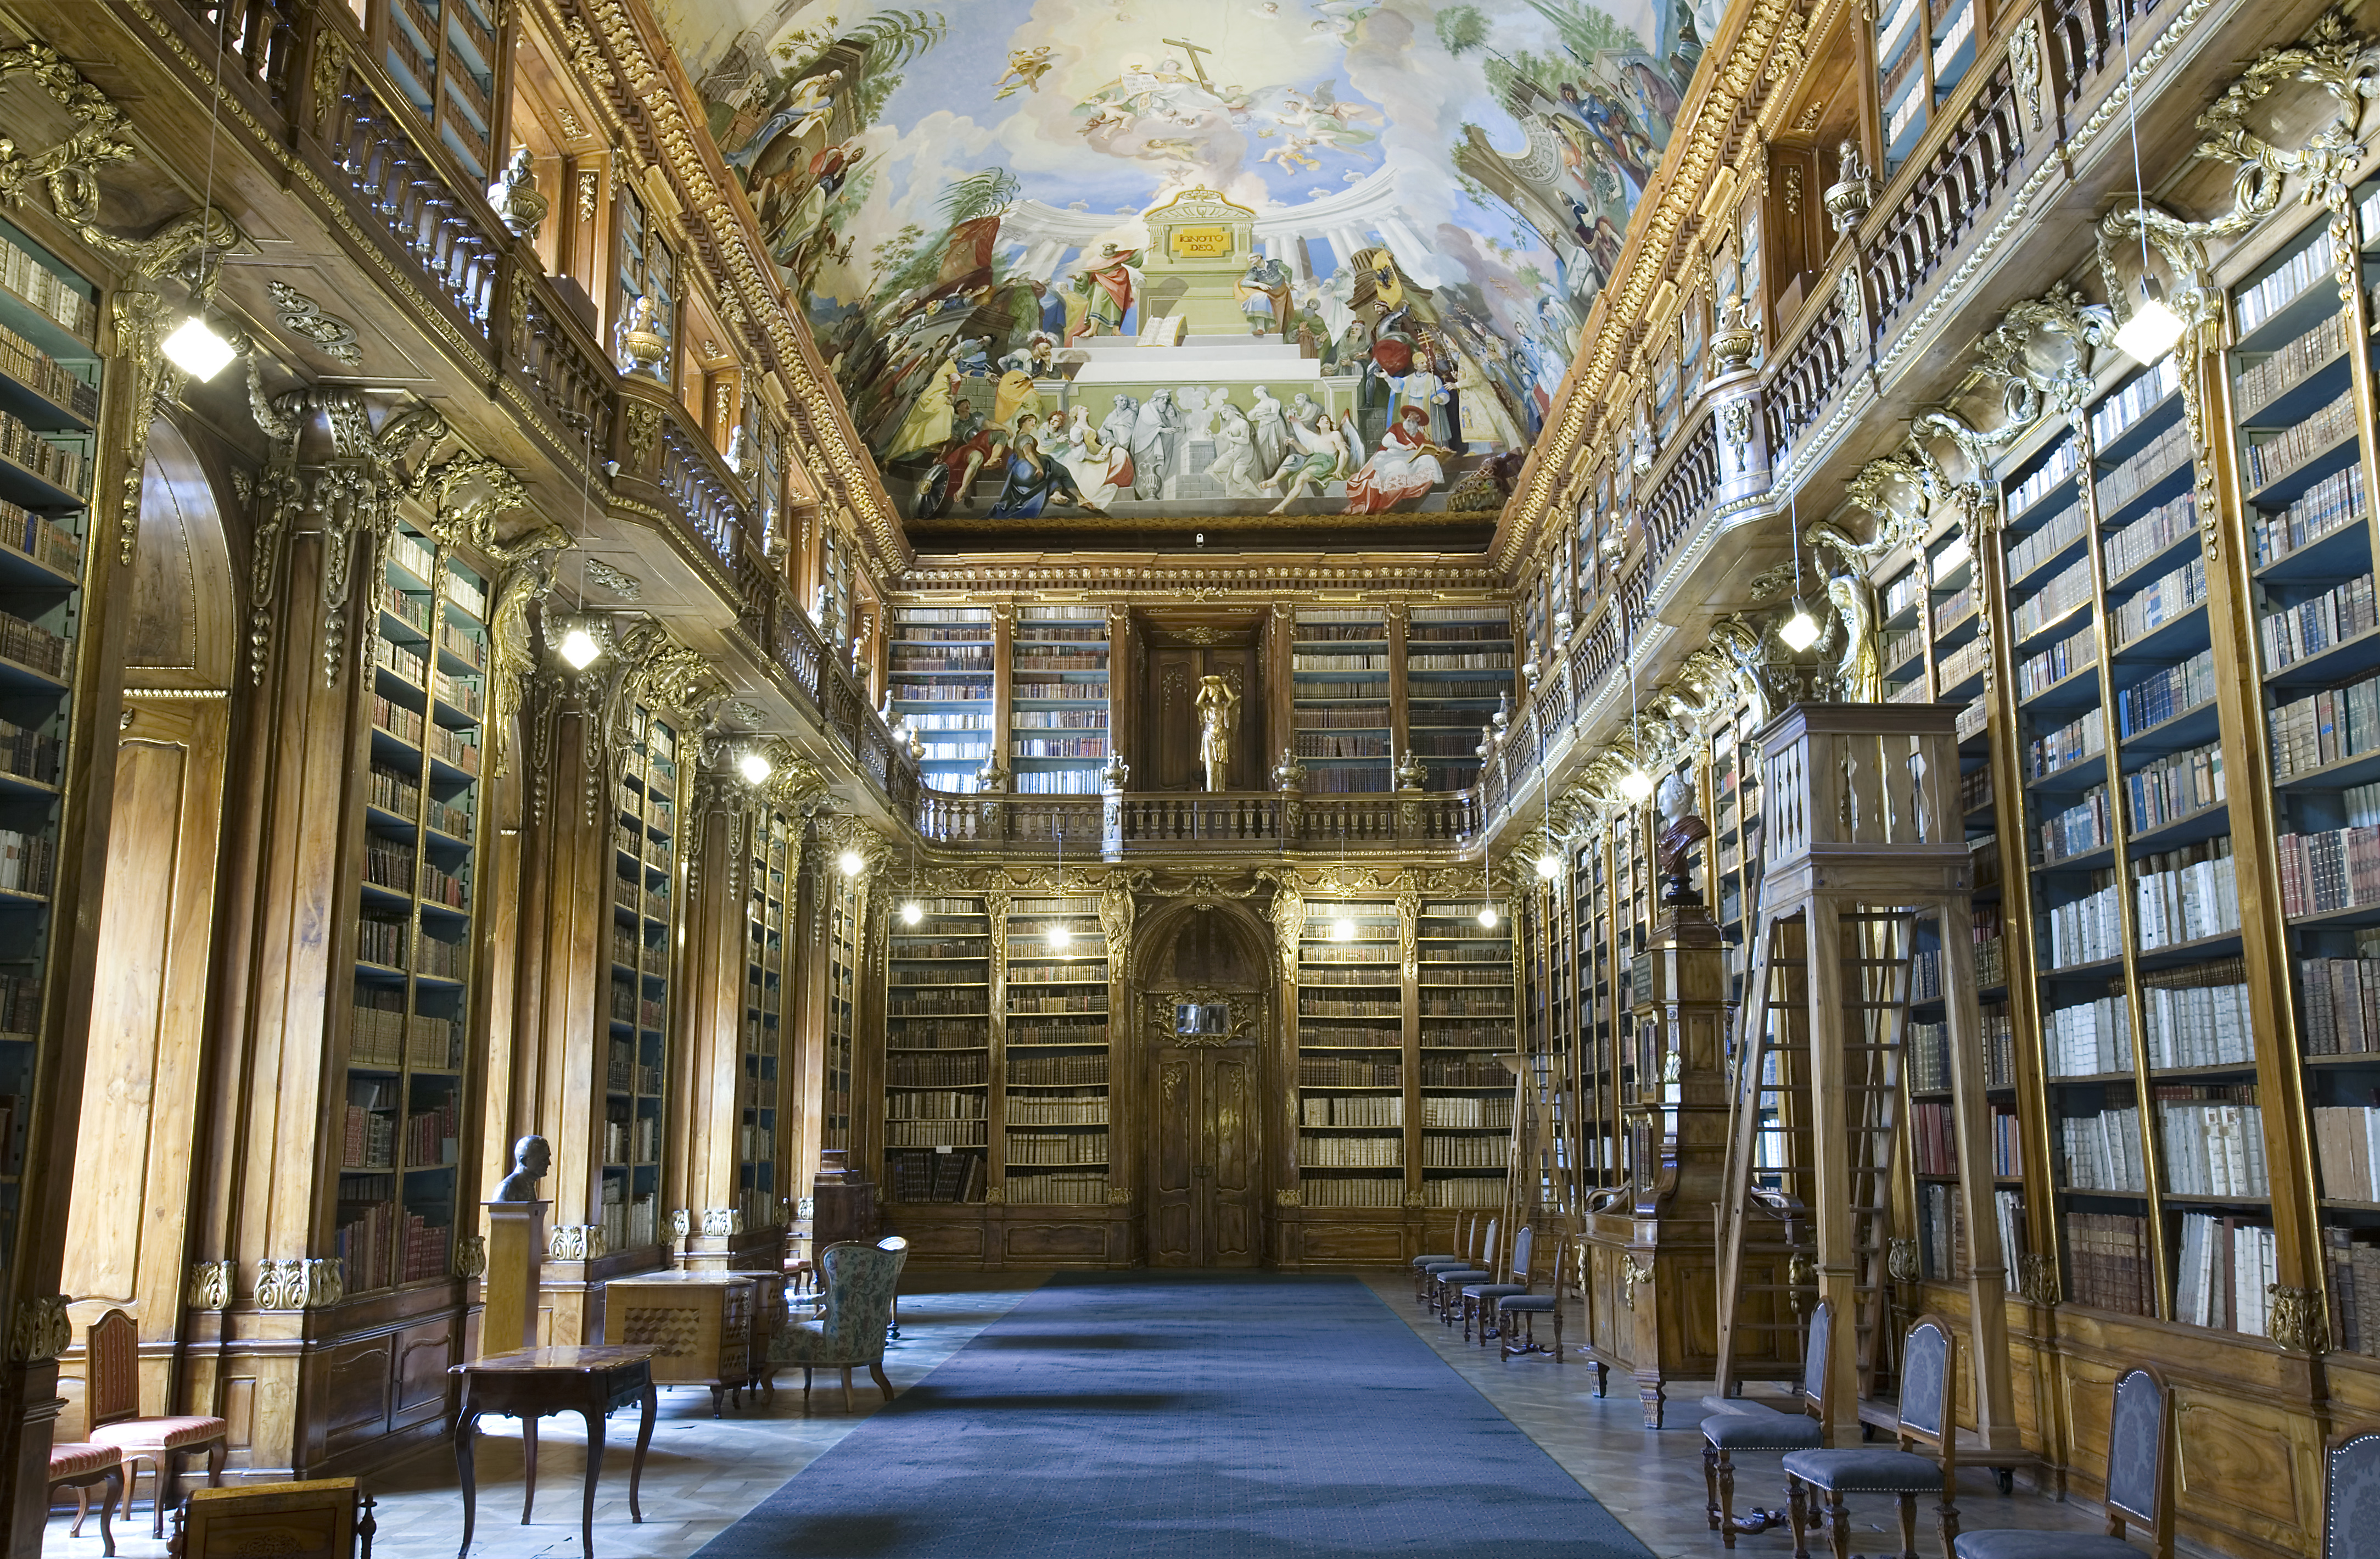 https://upload.wikimedia.org/wikipedia/commons/e/e9/Strahov_Library%2C_Prague_-_7515.jpg